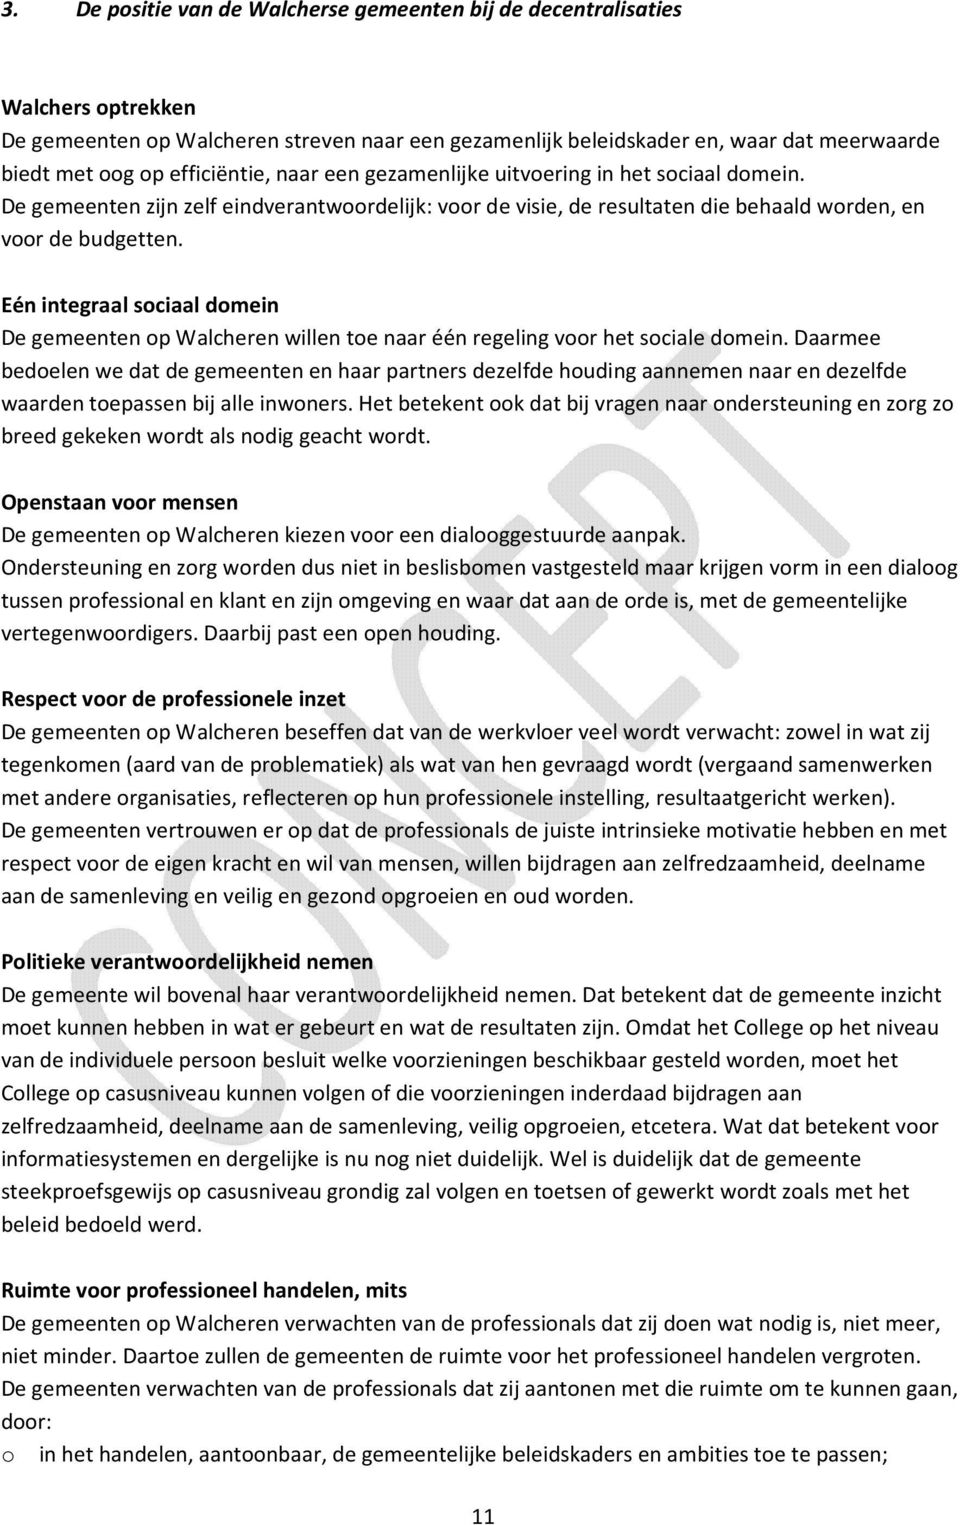 Eén integraal sociaal domein De gemeenten op Walcheren willen toe naar één regeling voor het sociale domein.